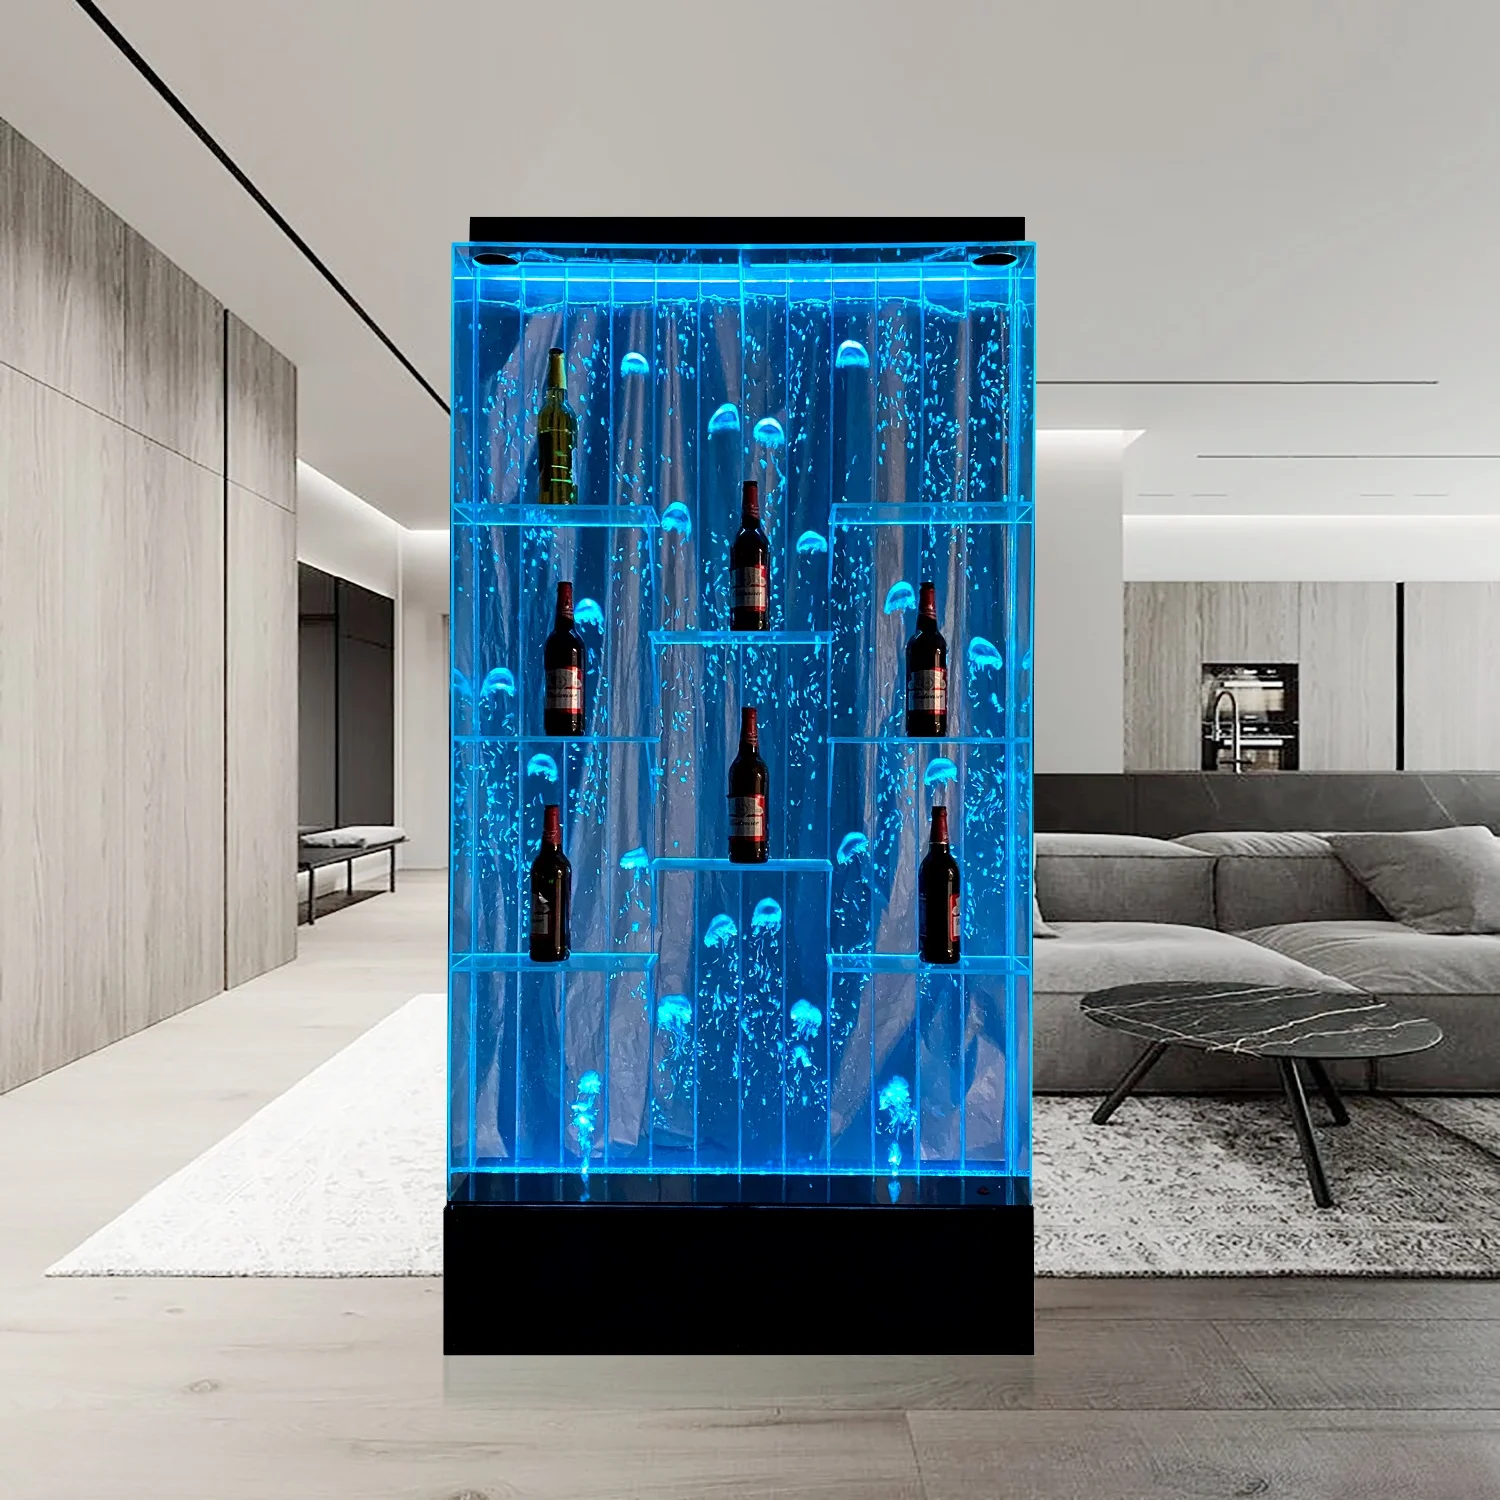 
Комнатный декоративный цифровой разделитель стен для ресторана, настенная панель с водяными пузырями  (60591136089)